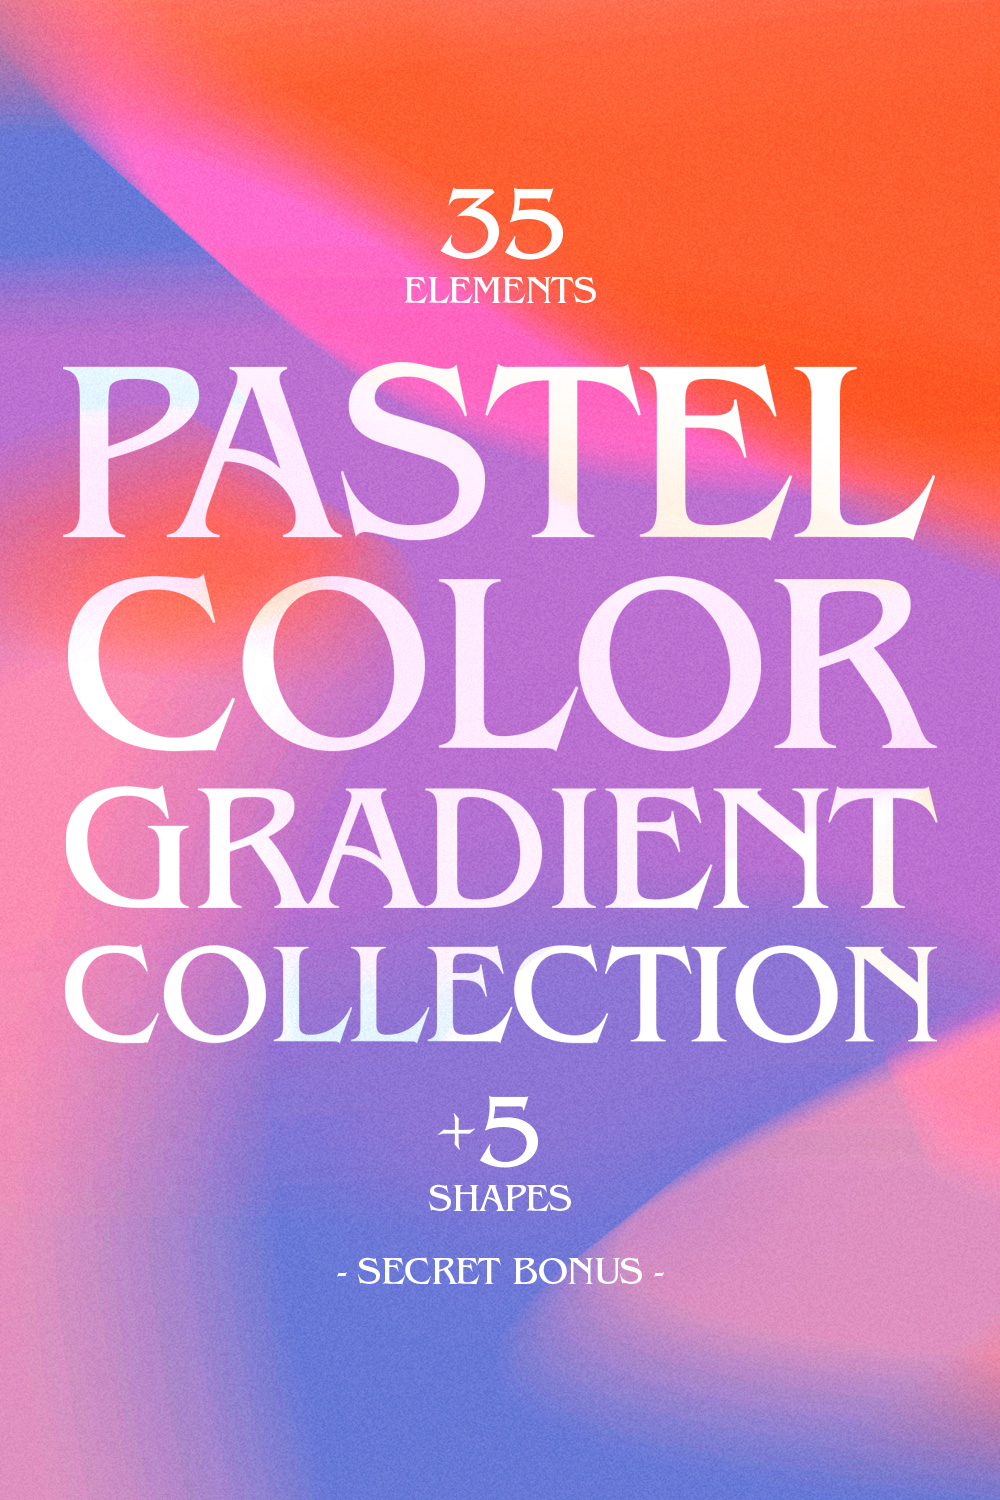 35 Pastel Color Gradients Collection pintetrest image.